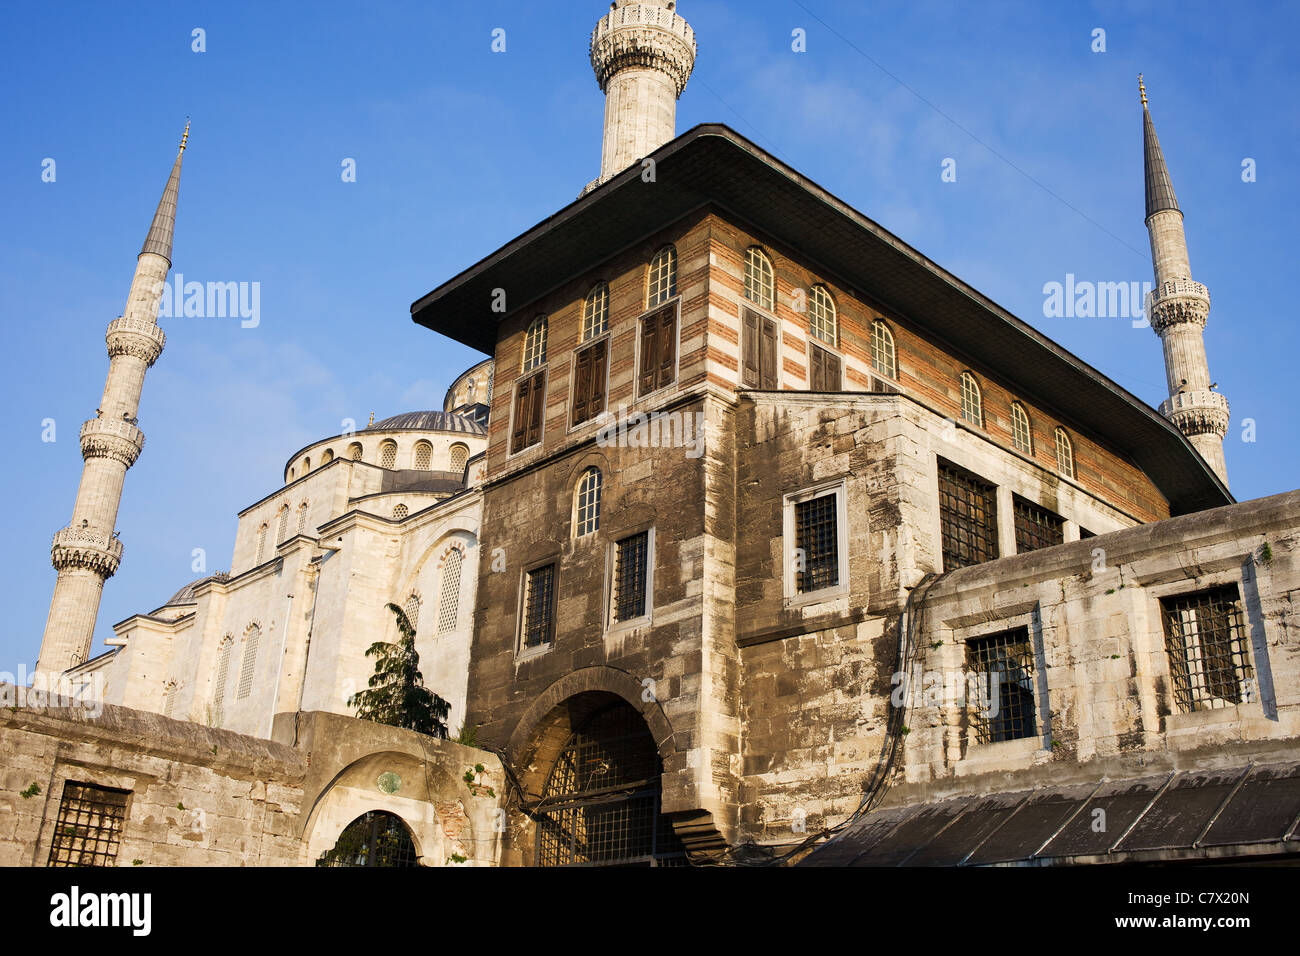 Osmanische Architektur im historischen Stadtteil Sultanahmet, Istanbul, Türkei. Stockfoto